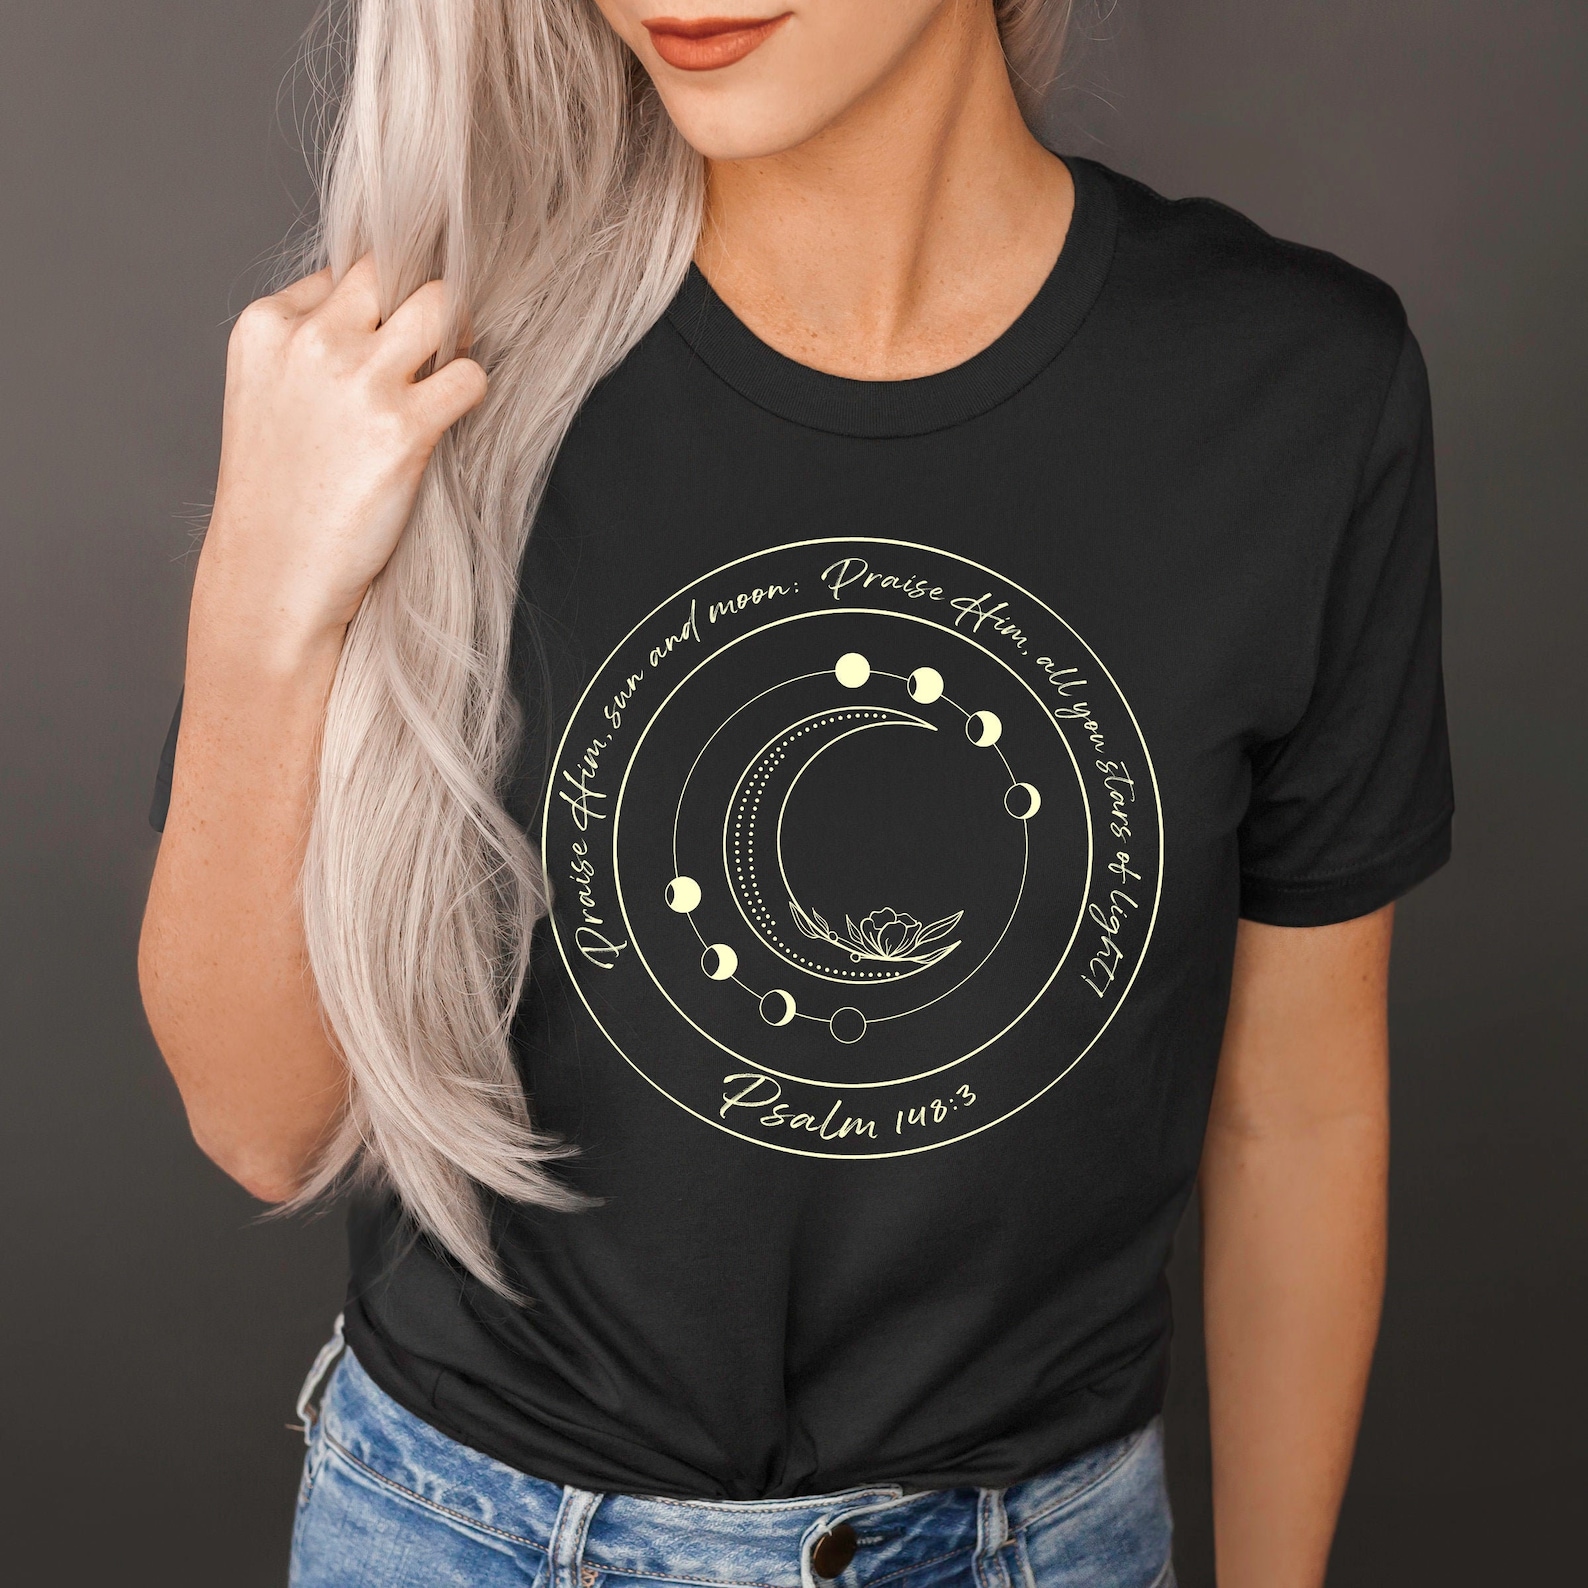 Celestial Tshirt/ Faith based Sun and Moon Tee/ Astronomical | Etsy